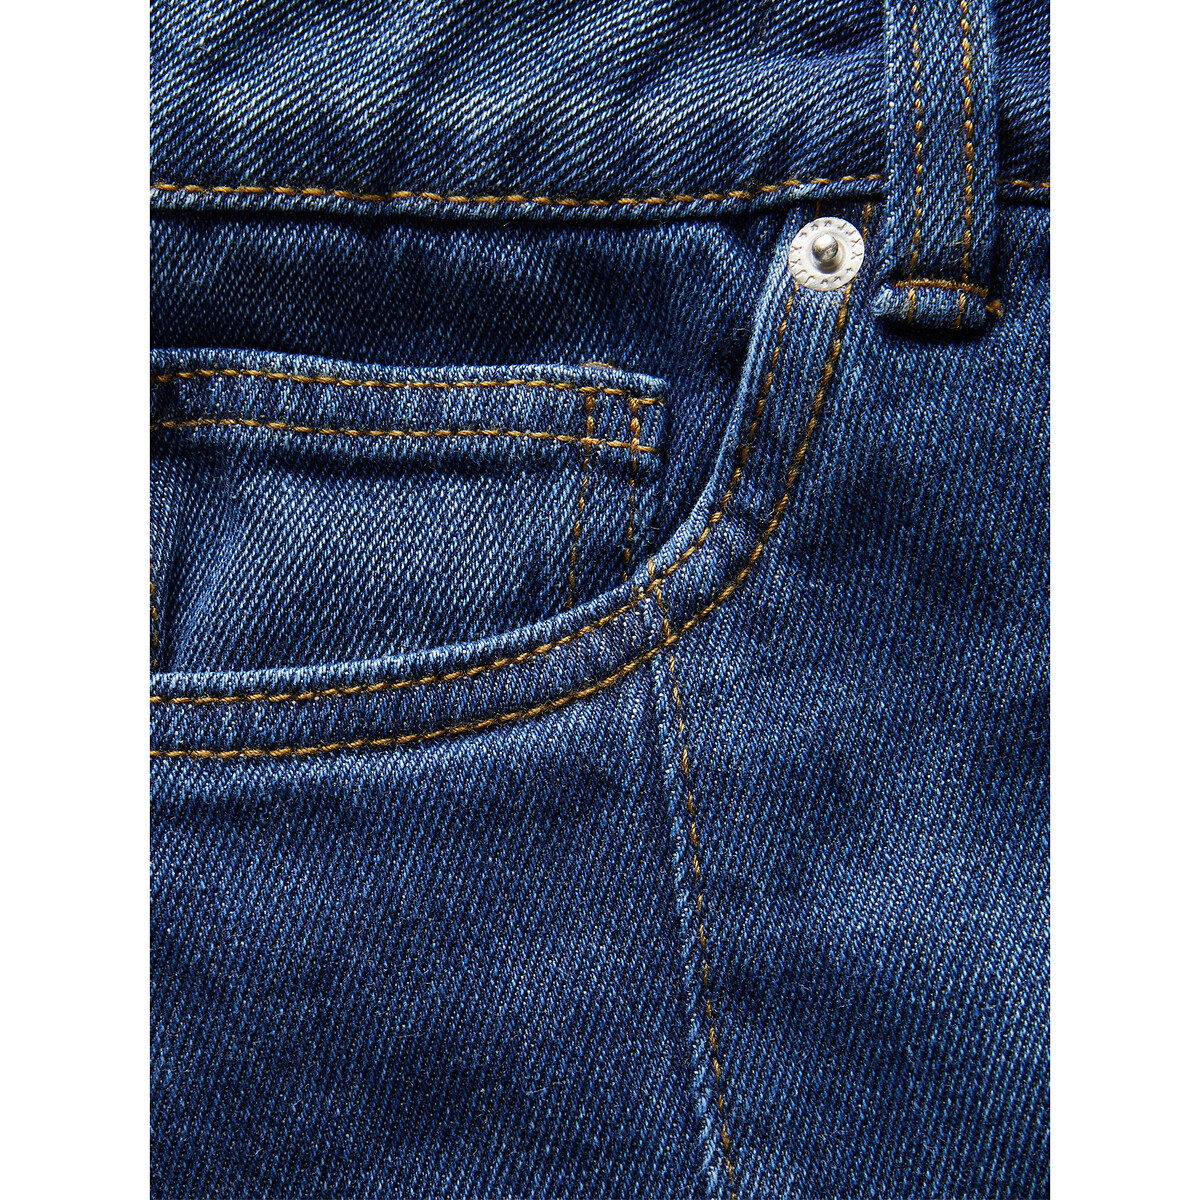 Юбка Короткая джинсовая высокий пояс XS синий LaRedoute, размер XS - фото 5